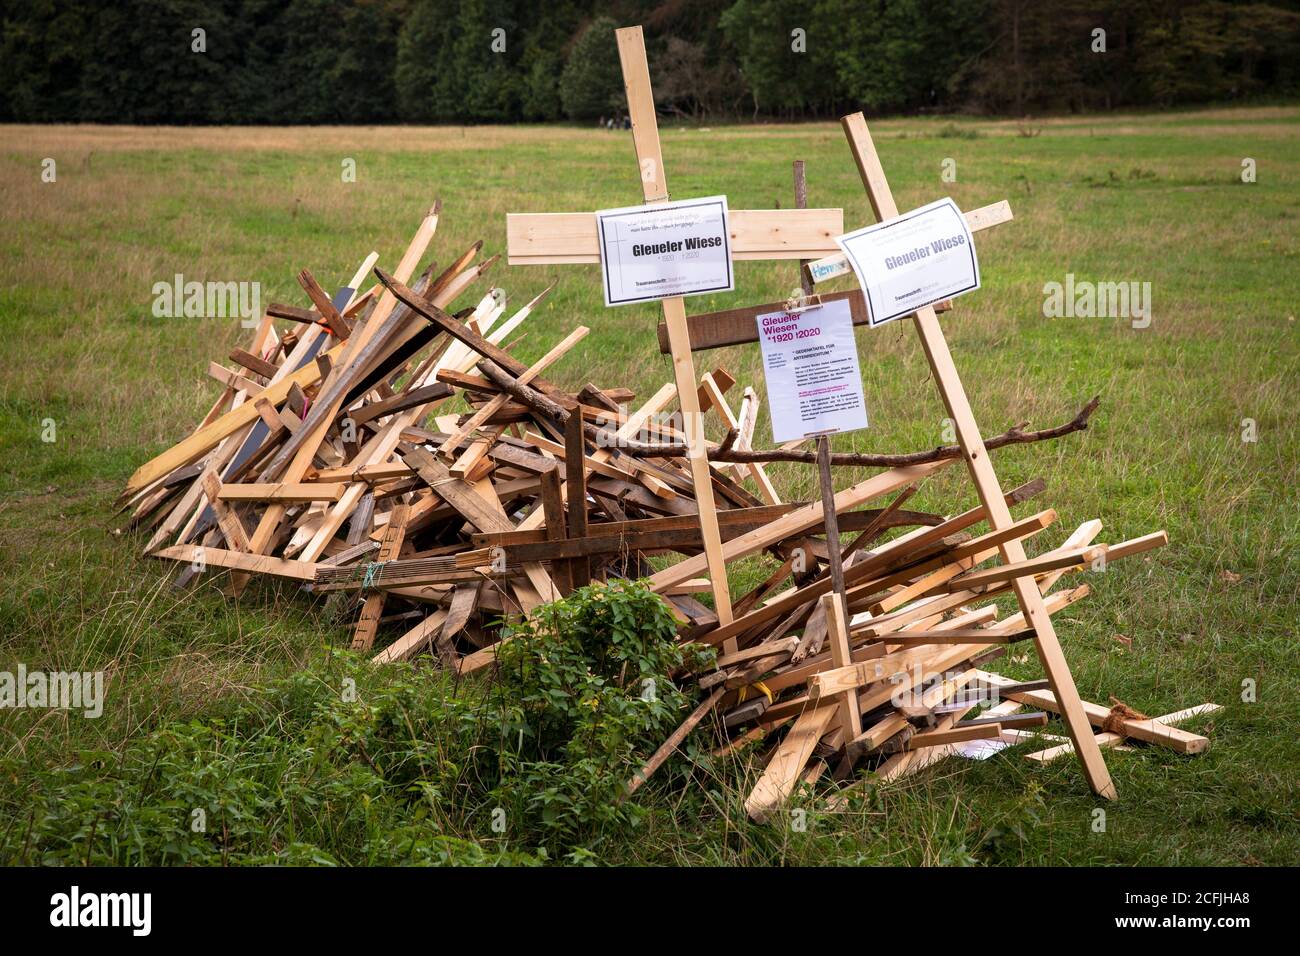 Persone sconosciute avevano eretto croci sul Gleueler Wiese in la foresta cittadina in protesta contro l'espansione del area di allenamento della clu calcistica Foto Stock